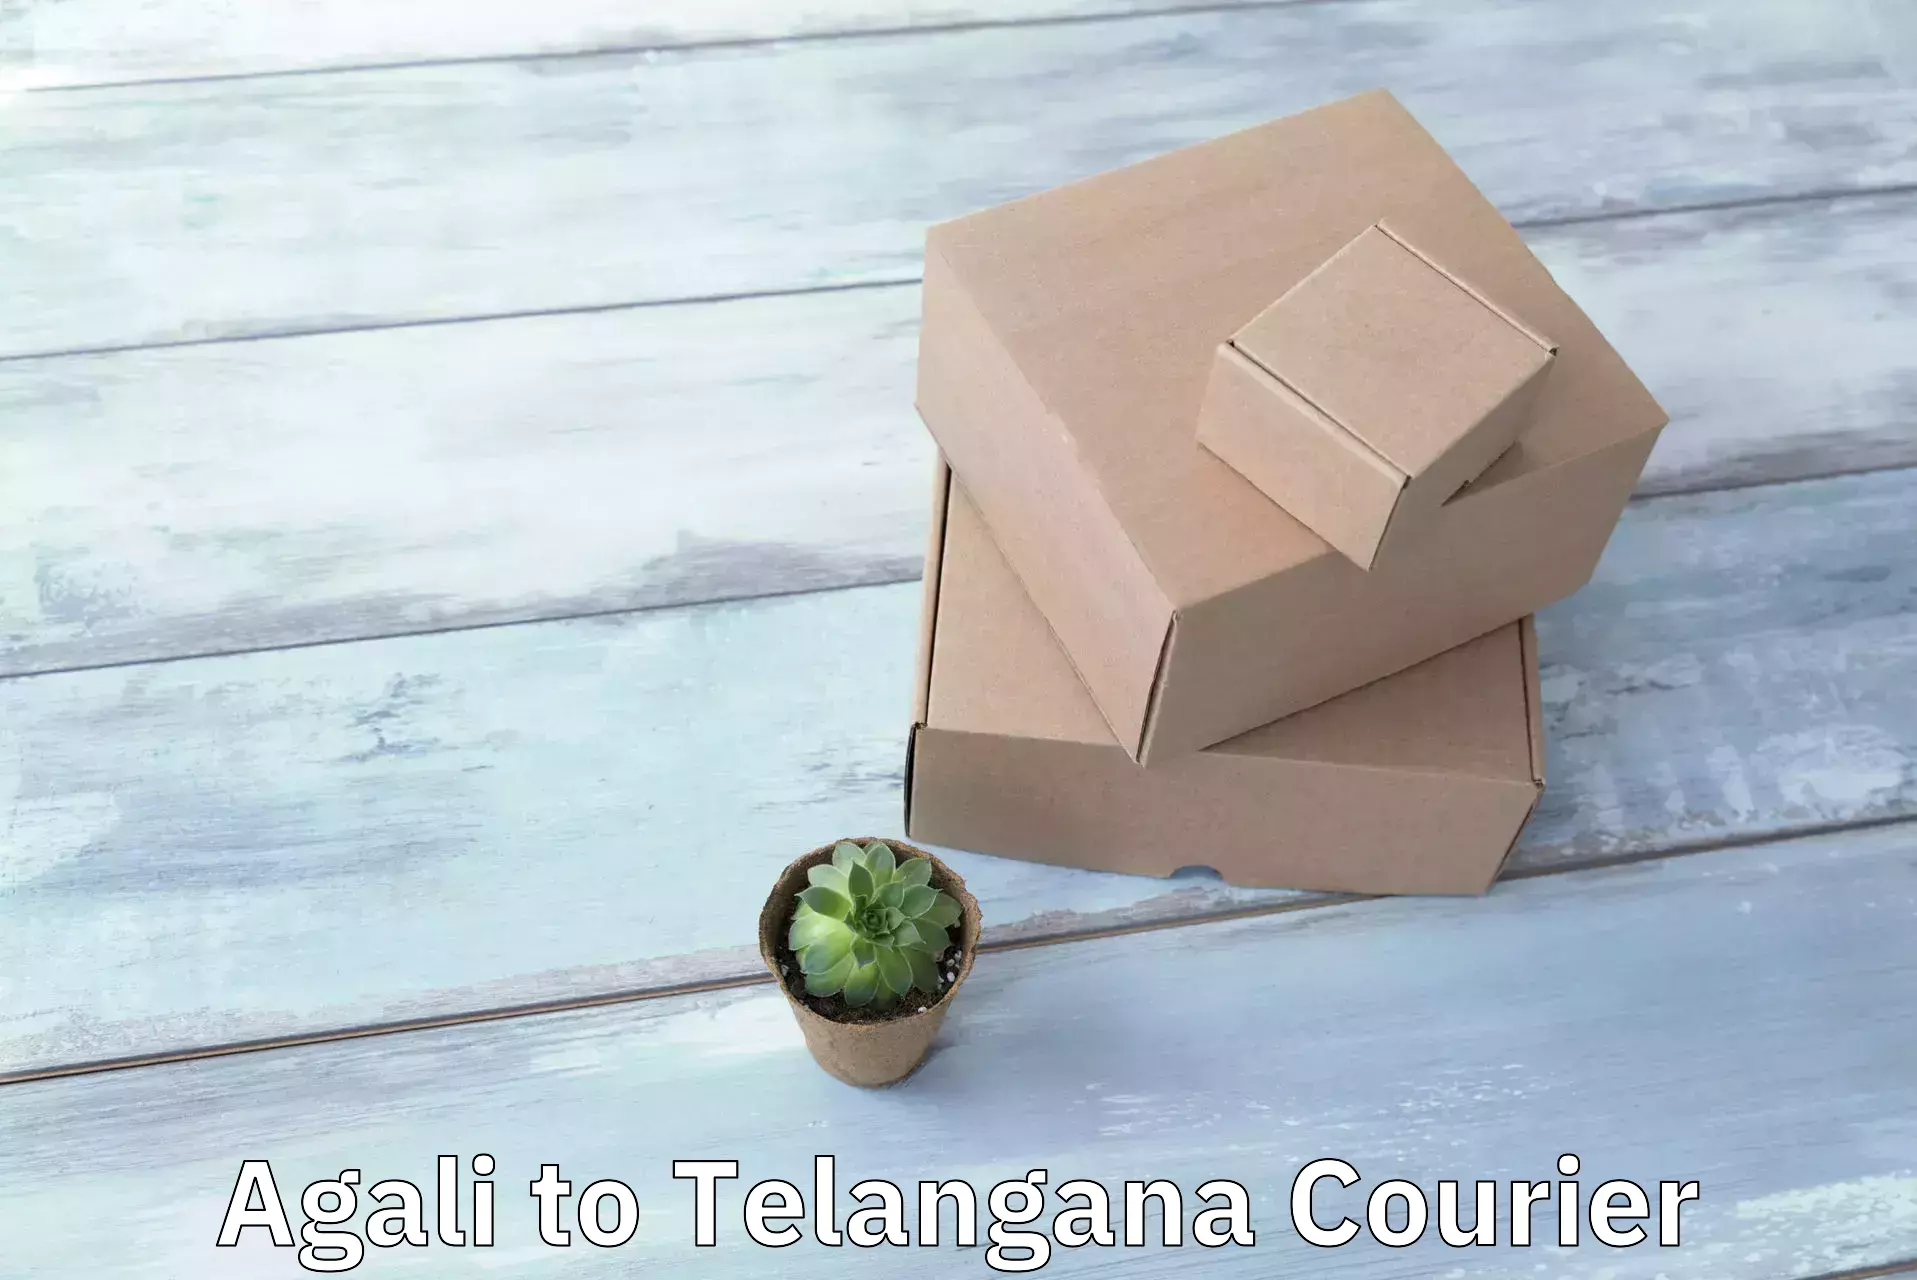 Customer-centric shipping Agali to Telangana